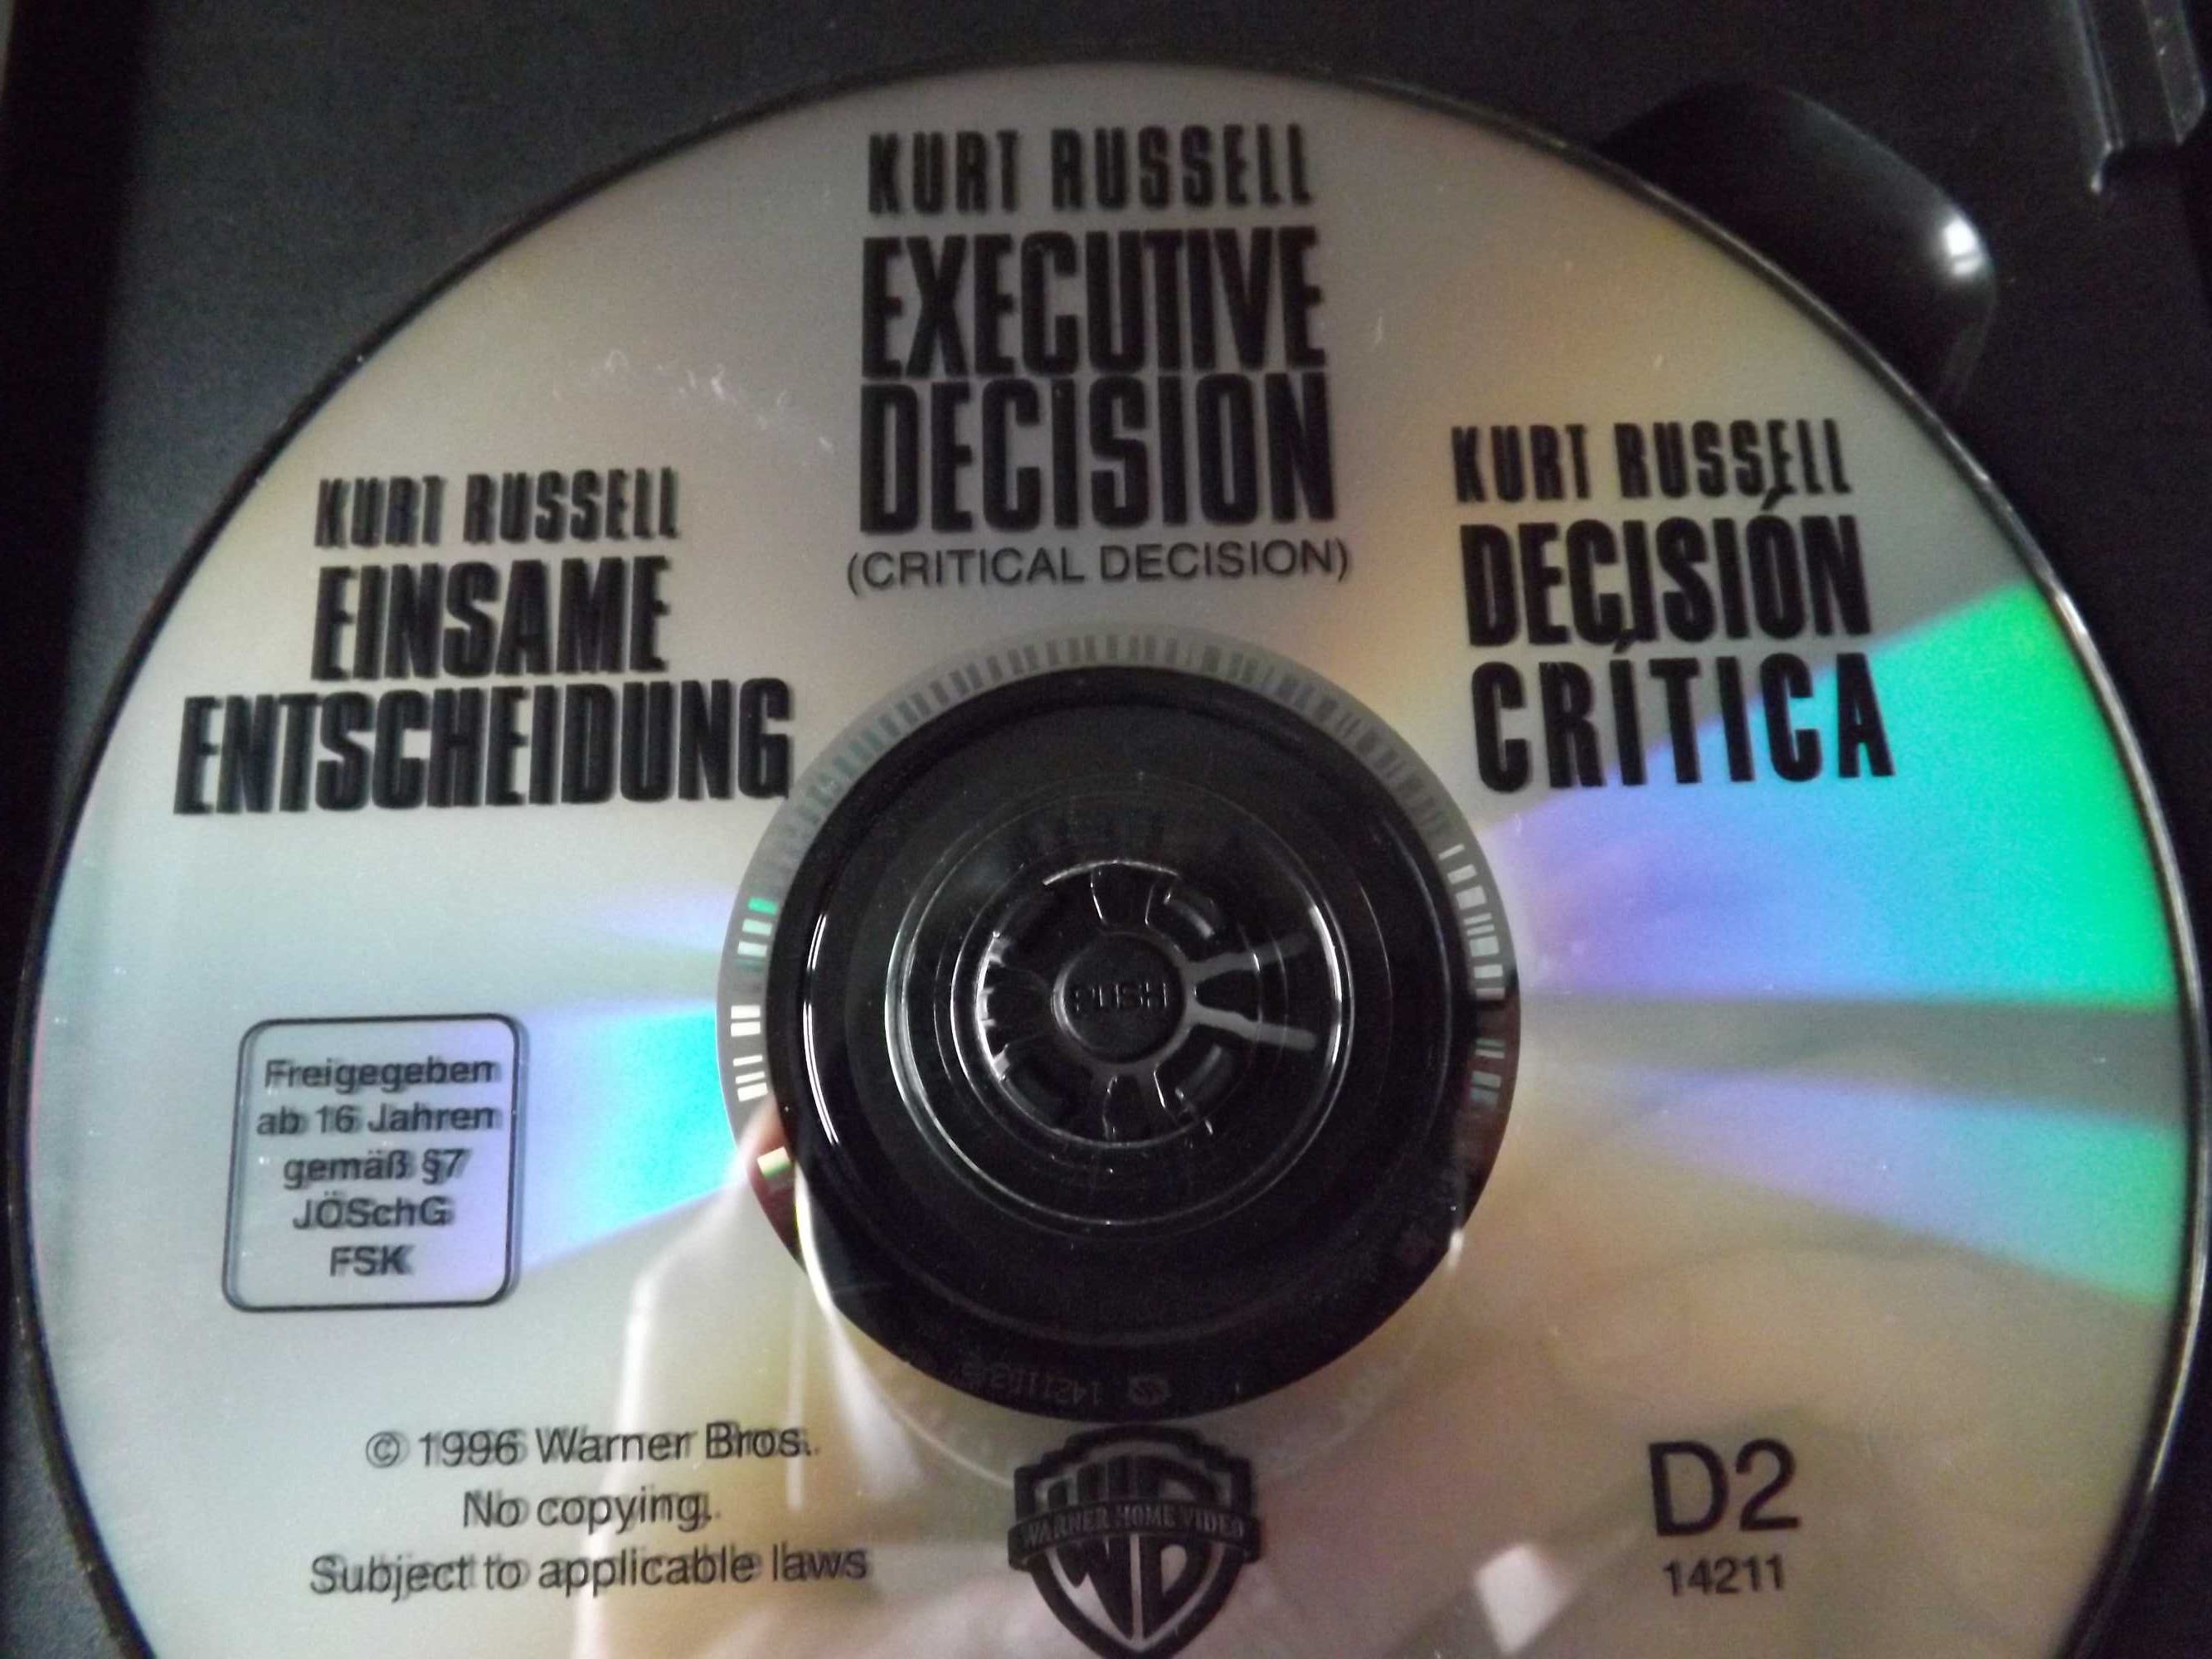 Krytyczna decyzja dvd Kurt Russell unikat klasyk